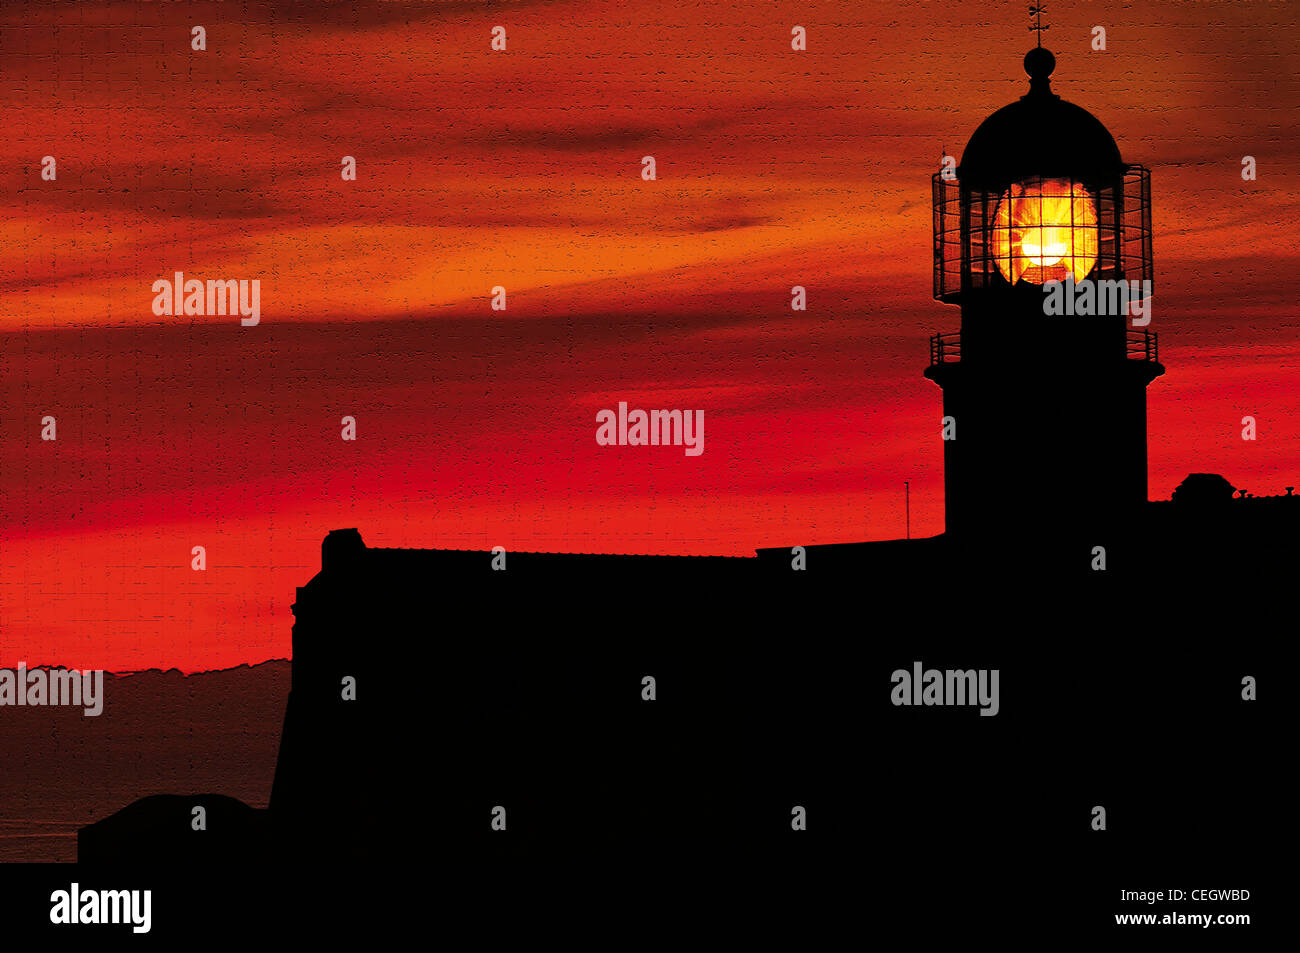 Portugal, Algarve: Sonnenuntergang am Leuchtturm von Kap St. Vincent in der Nähe von Sagres Stockfoto